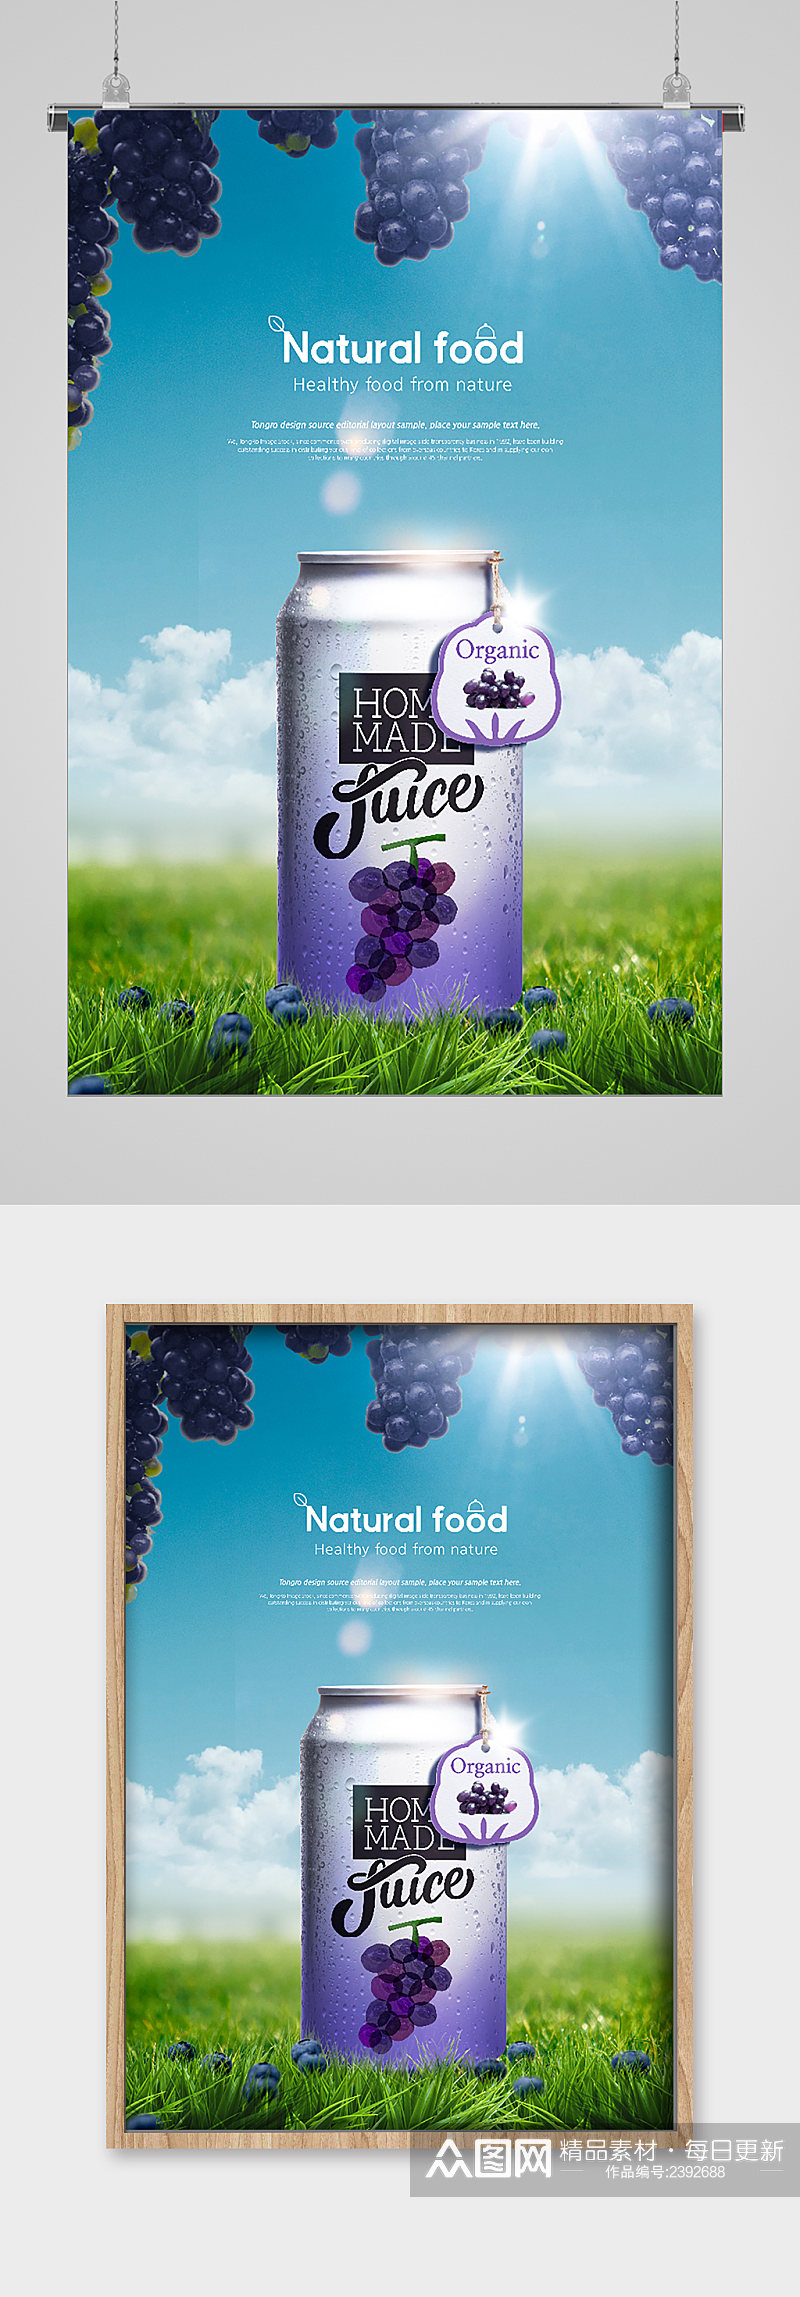 葡萄风味饮品宣传海报素材